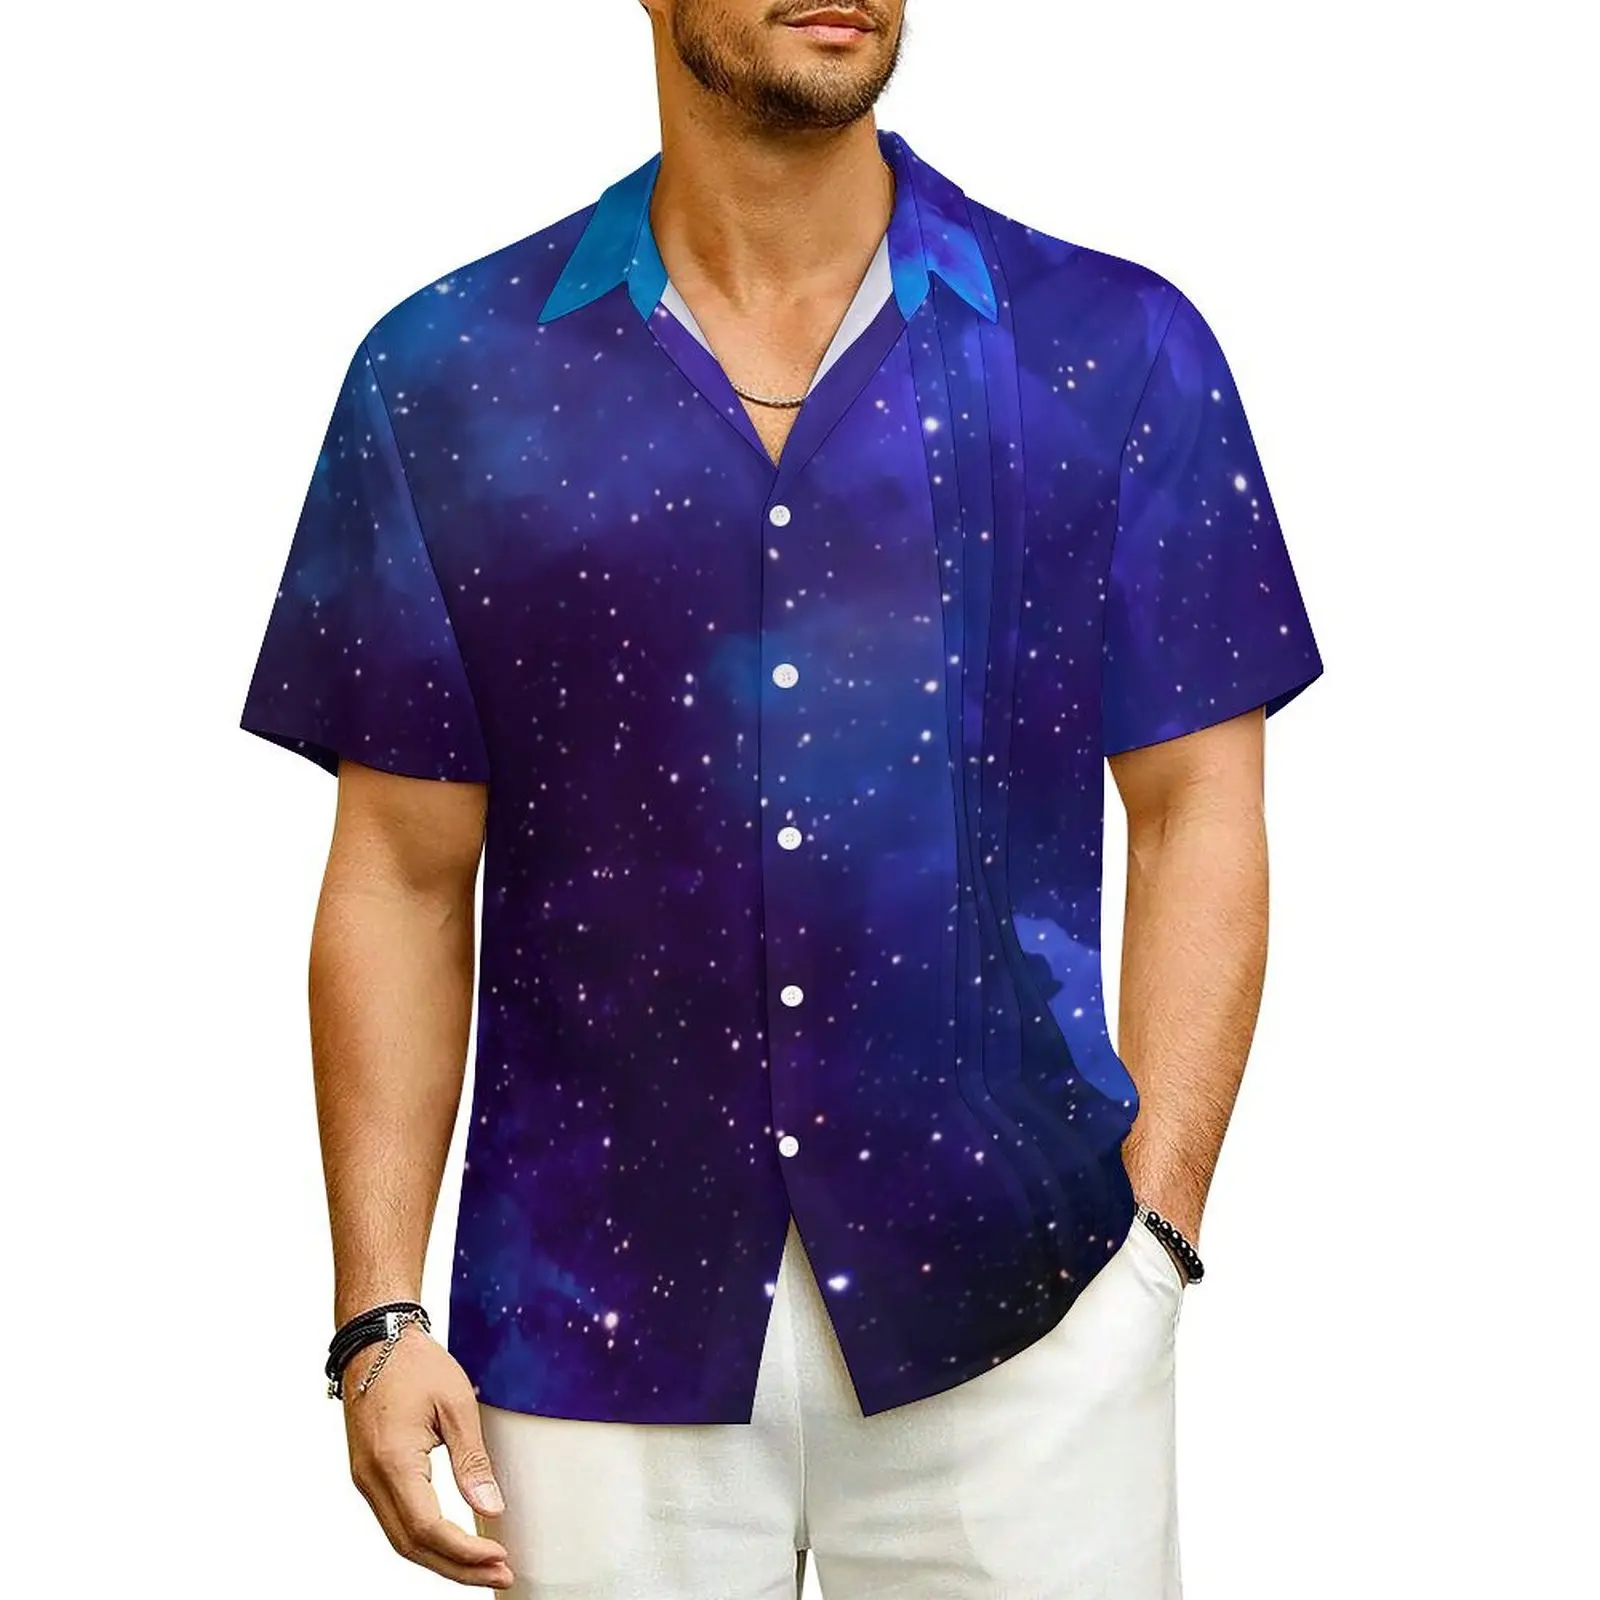 

Рубашка мужская с цветным принтом, гавайская блузка свободного покроя, повседневная с коротким рукавом, для отпуска, синяя, большие размеры 3XL 4XL